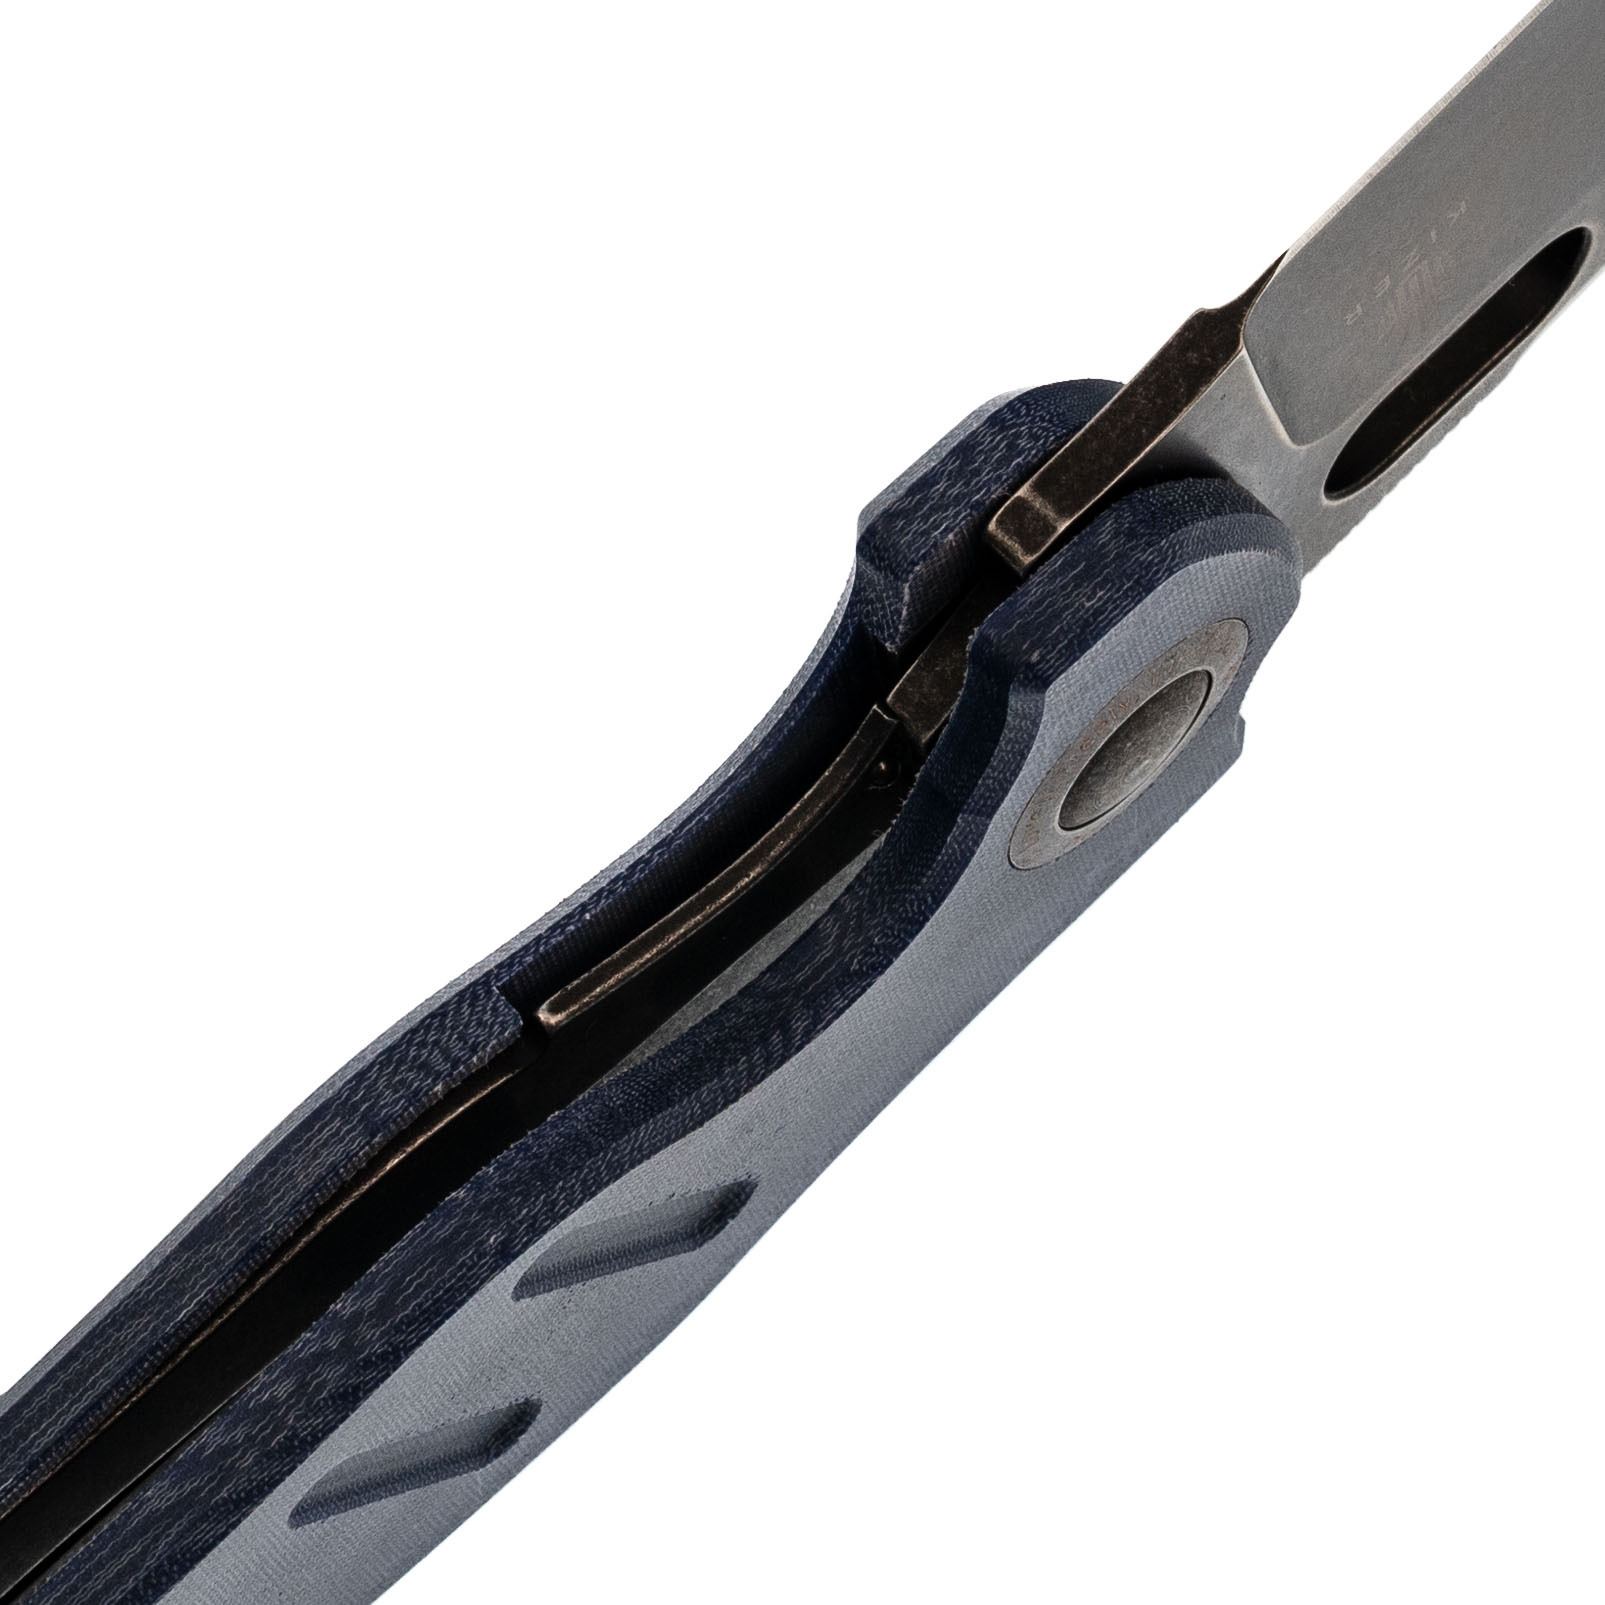 Складной нож Kizer C01C, сталь 154CM, рукоять микарта - фото 4